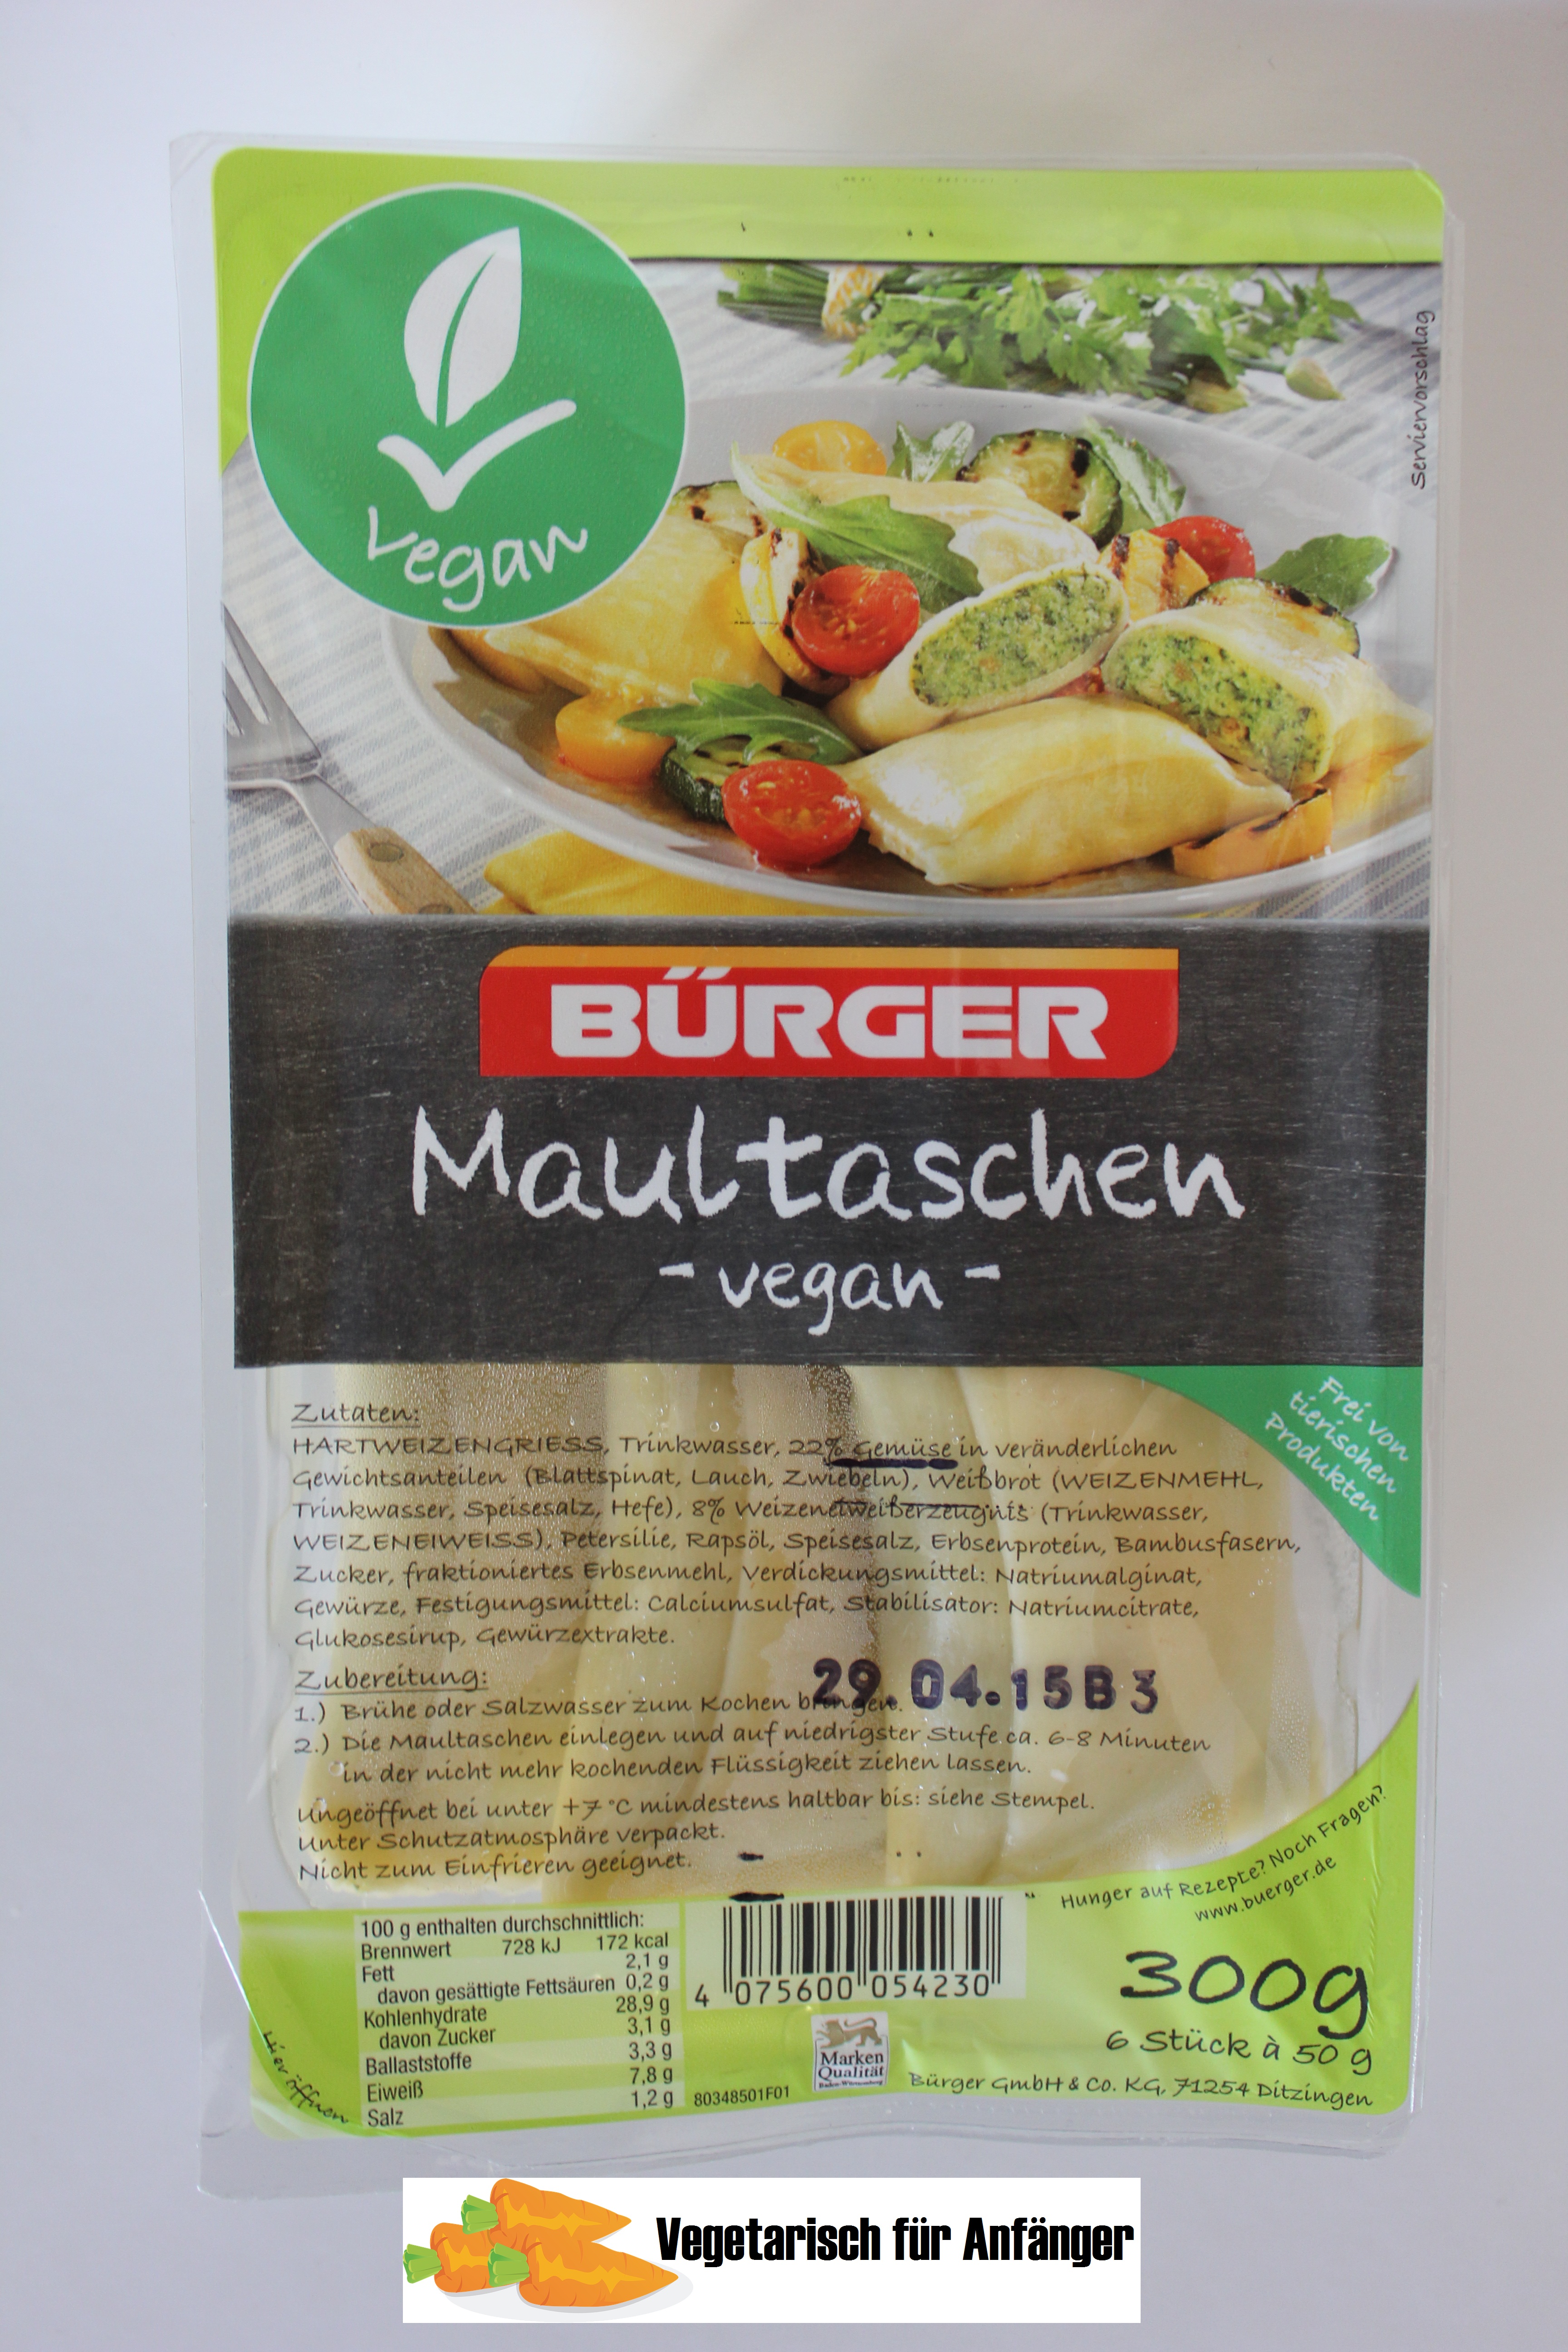 Vegane Maultaschen (Bürger) – Vegetarisch/Vegan für Anfänger